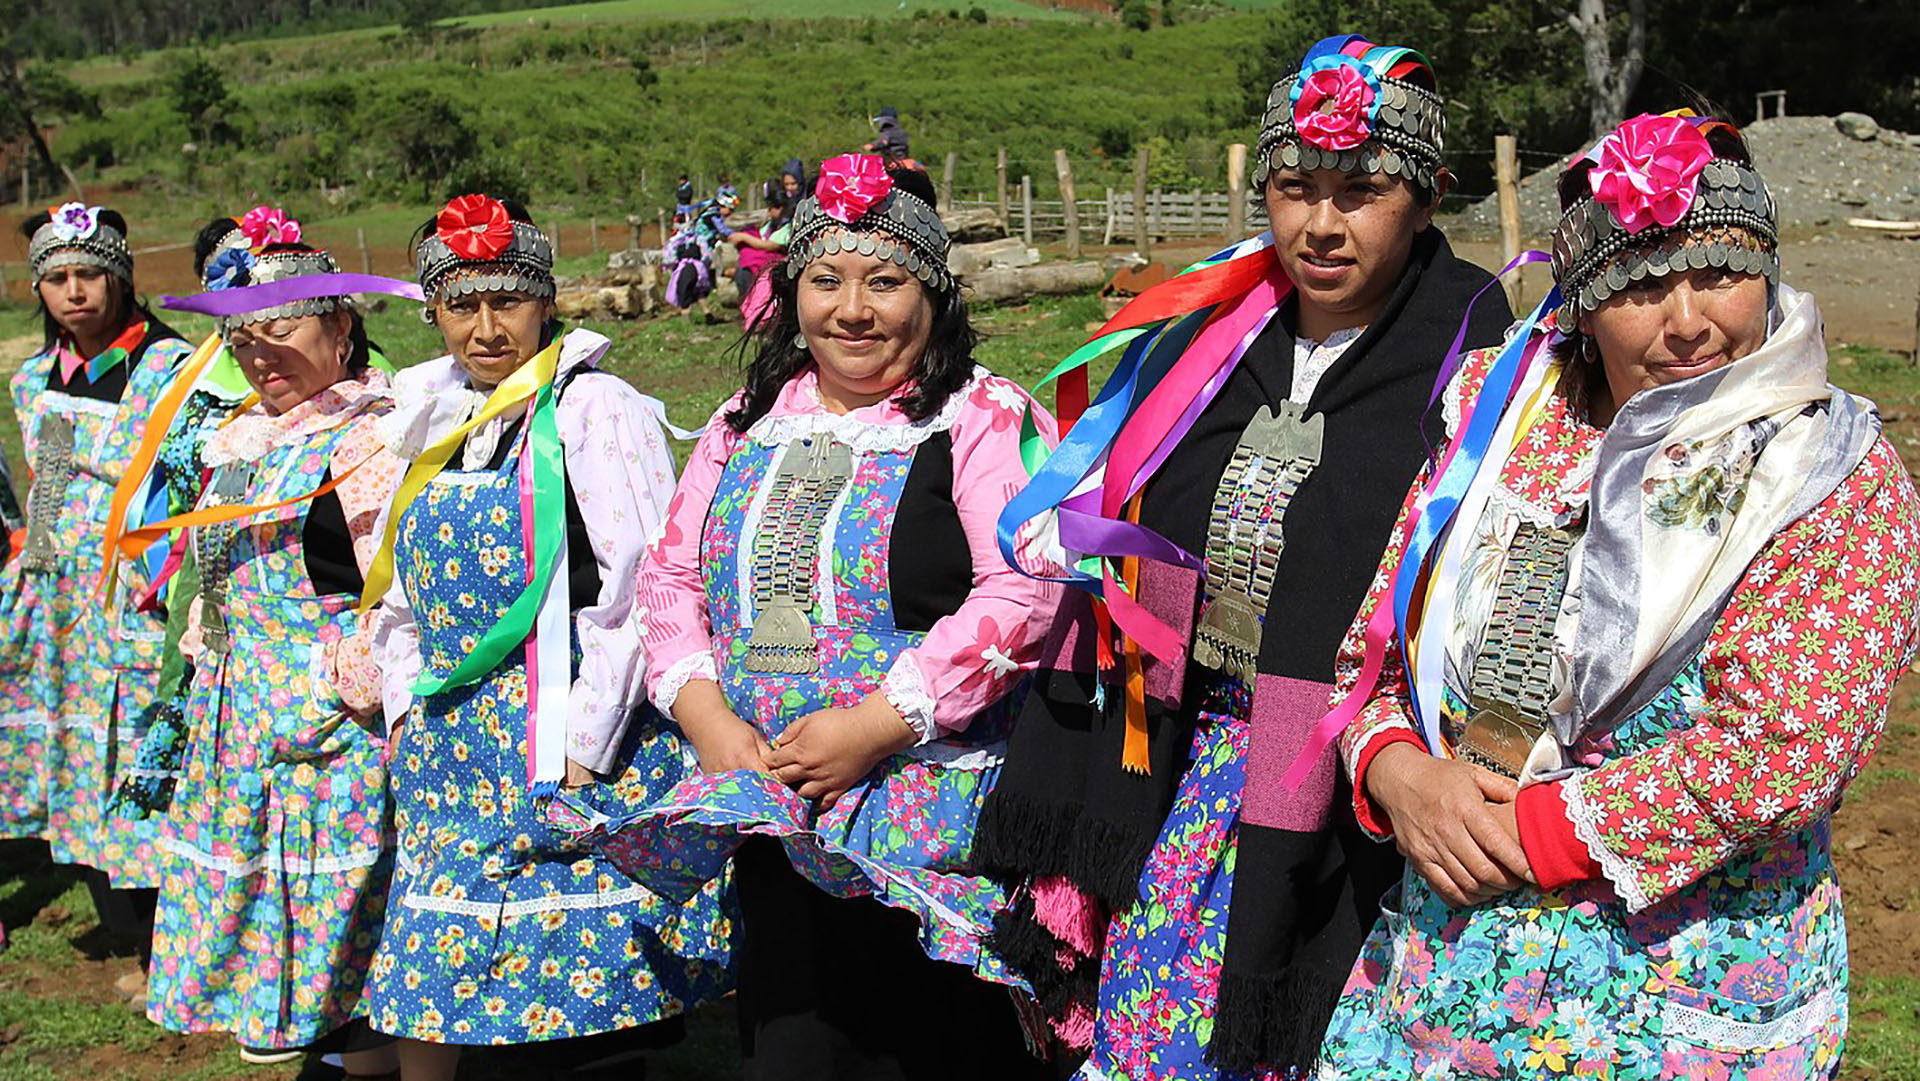 Les Mapuches, littéralement "Peuple de la terre" en mapudungun, sont les communautés aborigènes de la zone centre-sud du Chili et de l'Argentine (Photo: Wikimedia Commons/Ministerio Bienes Nacionales/CC BY 2.0)